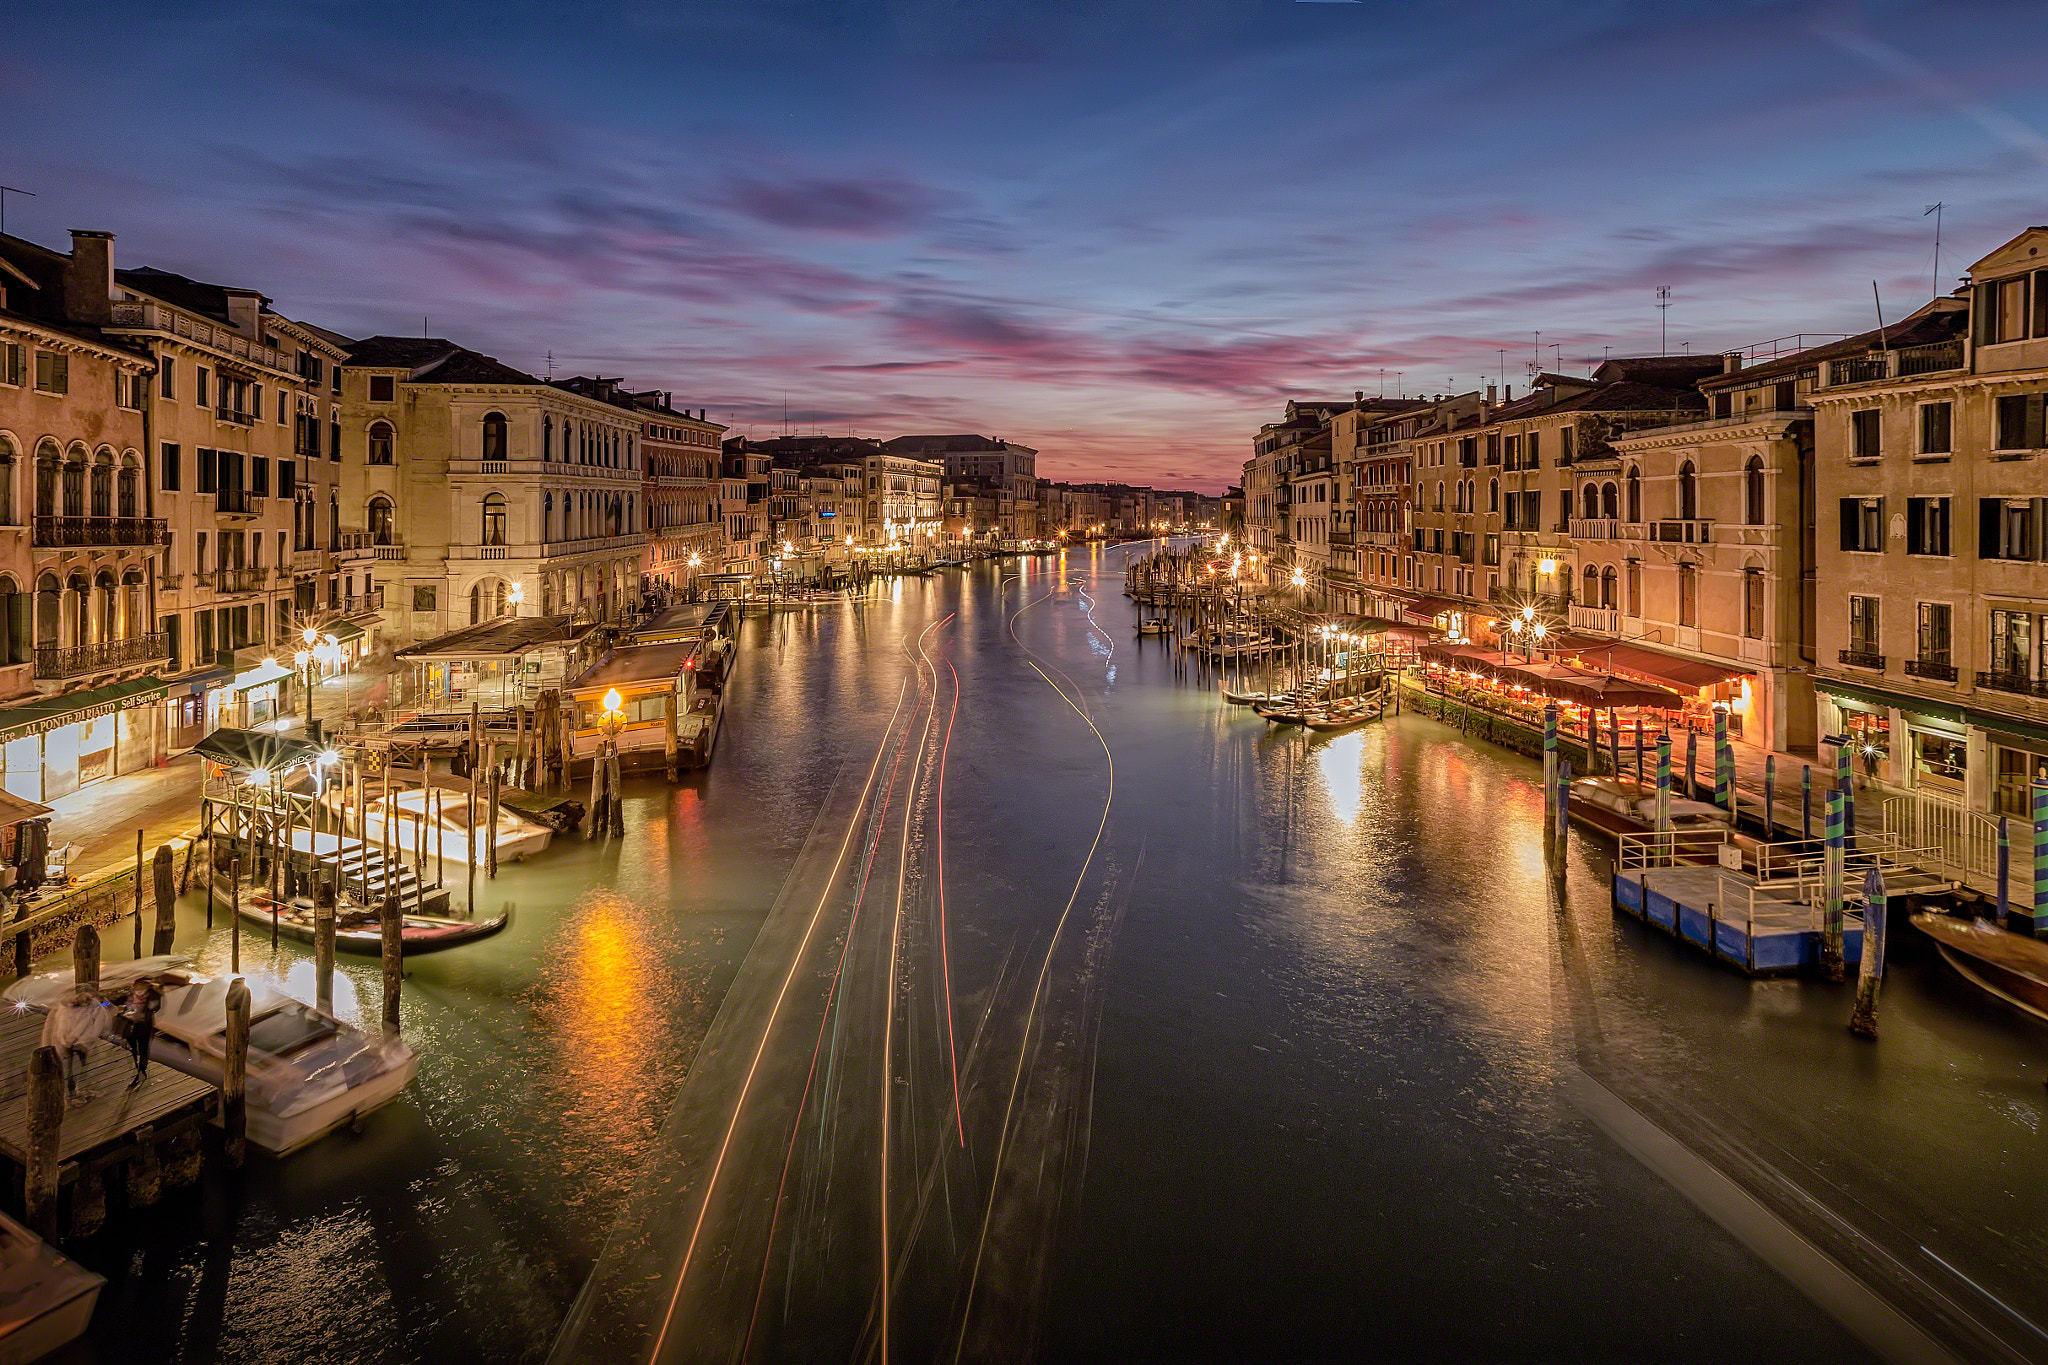 Обои Grand canal Italy город на рабочий стол